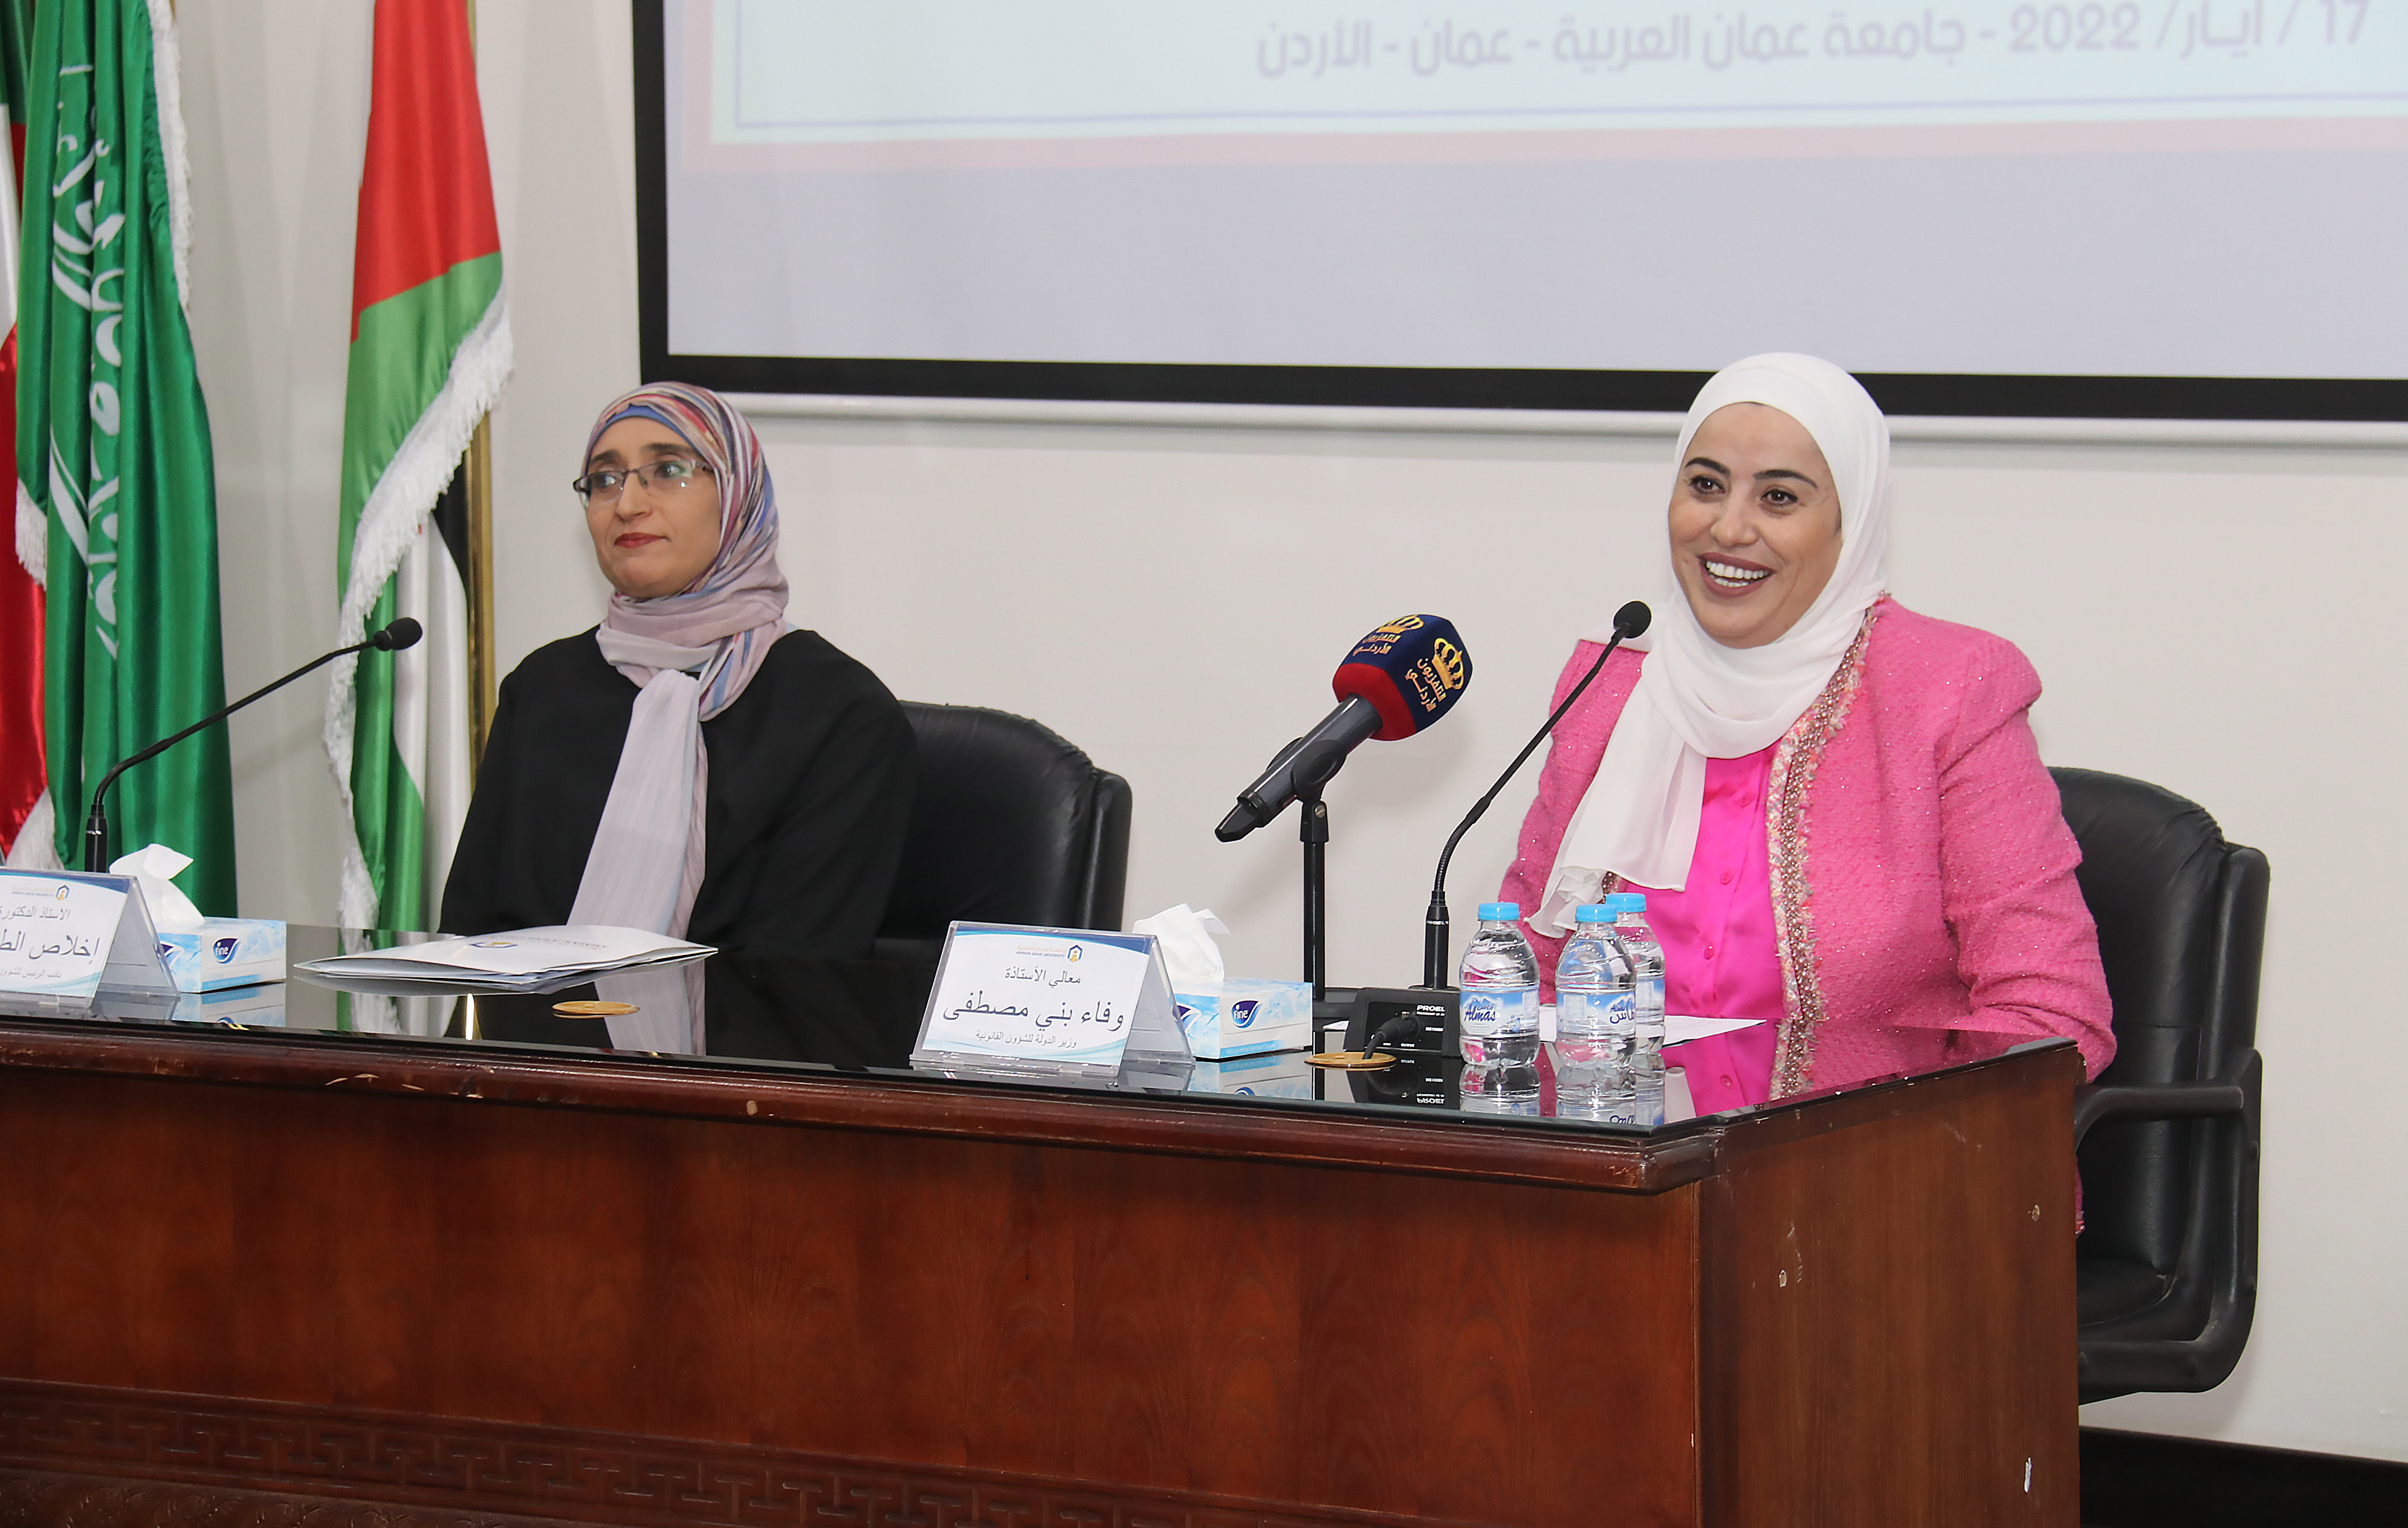 ندوة "التمكين السياسي والقيادي للمرأة الأردنية" في عمان العربية10